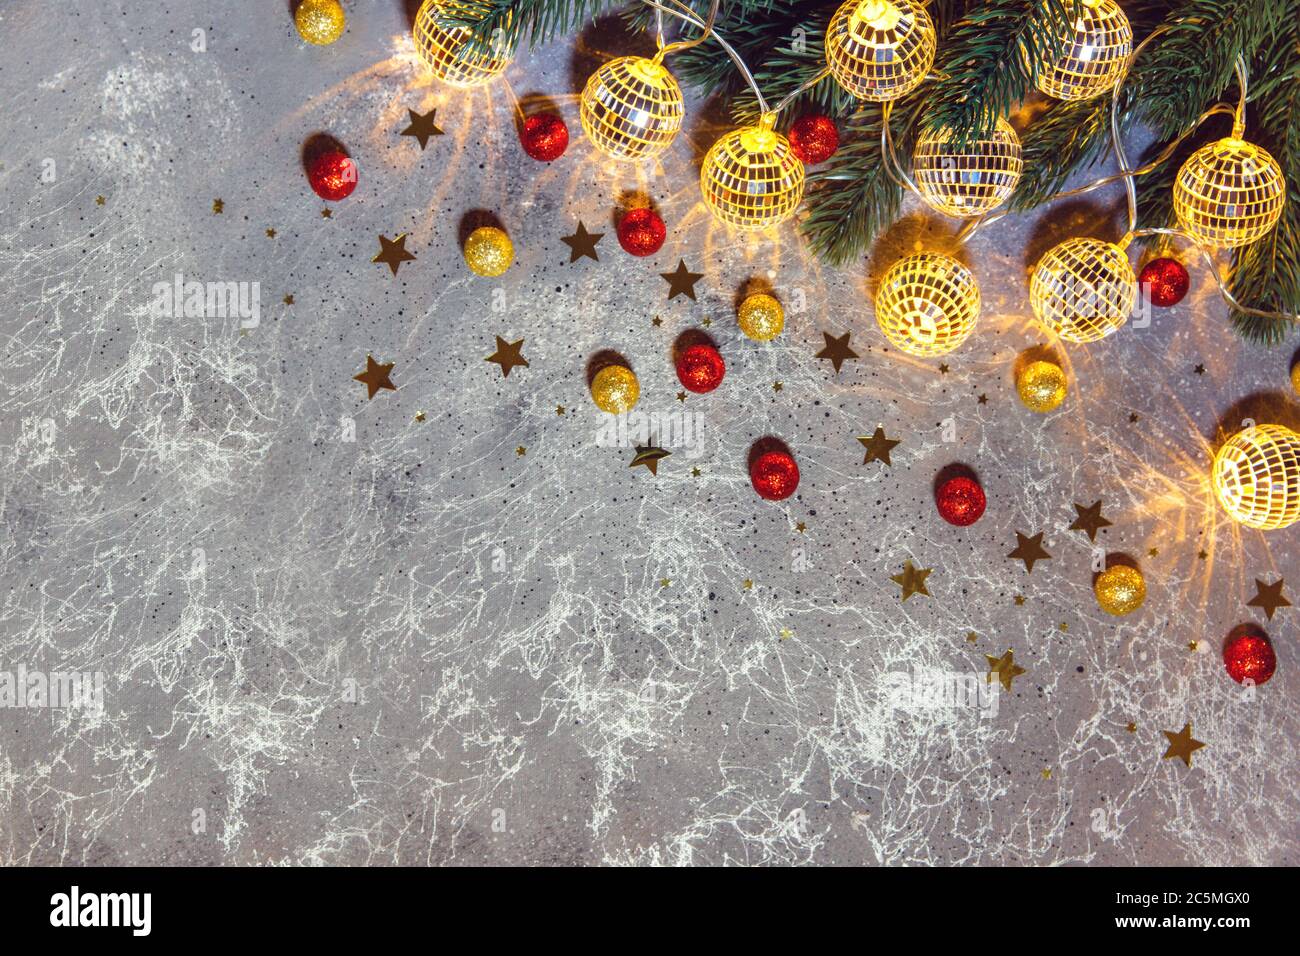 Weihnachtsbaum Zweig mit dekorativen Girlanden Kugeln glühendes Licht auf grauem Hintergrund mit goldenen und roten Kugeln und Sternen Stockfoto